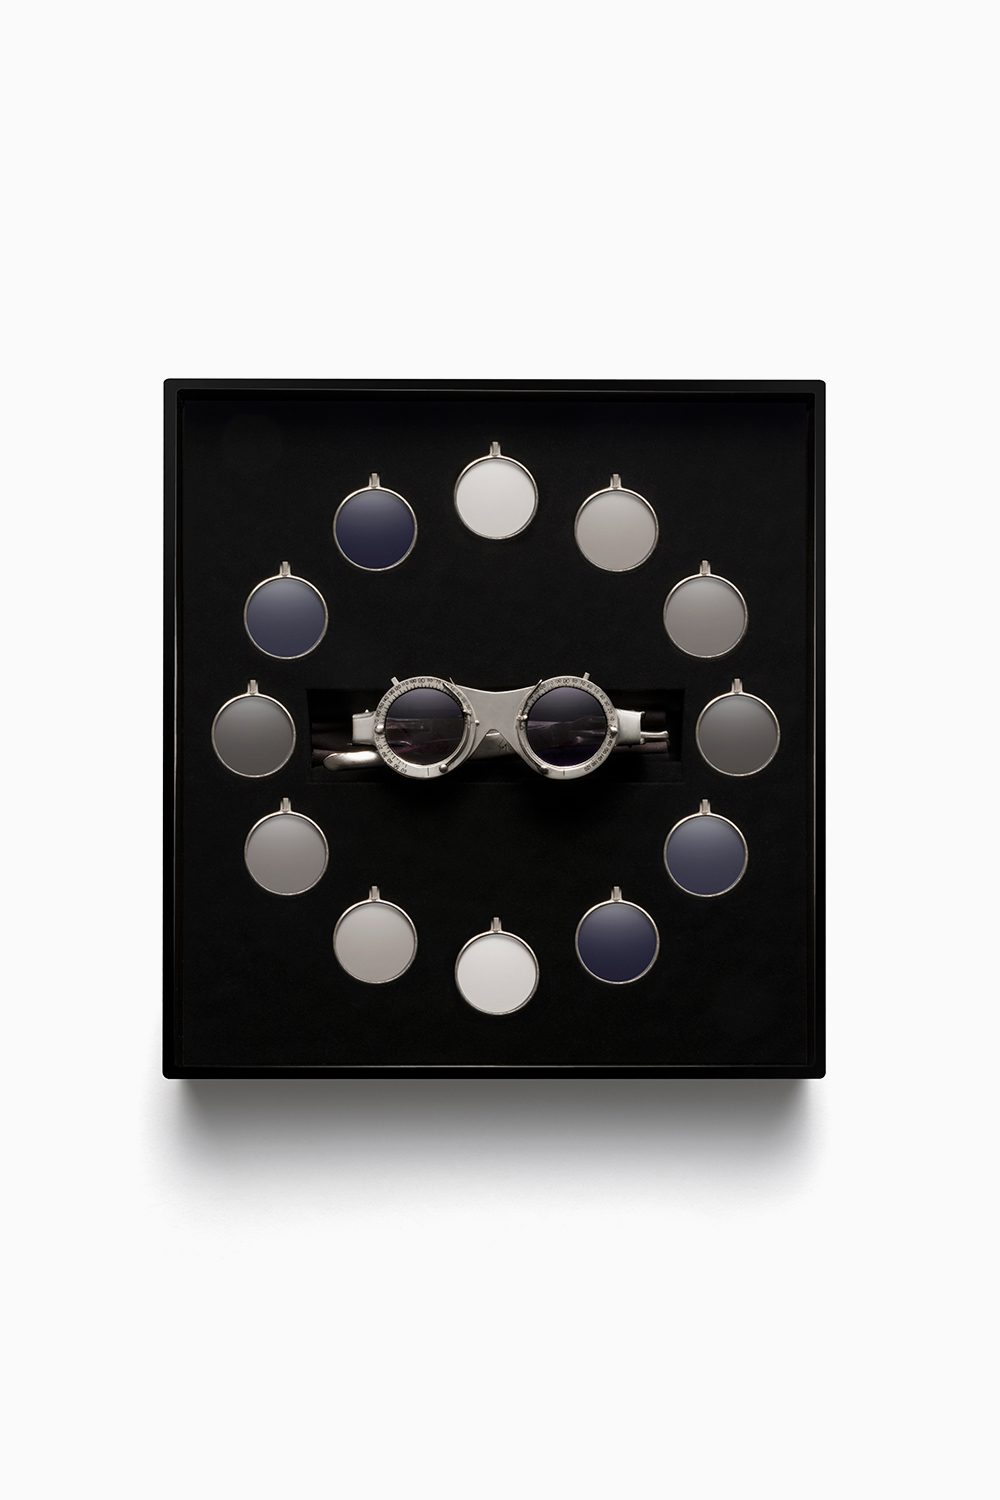 hiroshi sugimoto's eye witness, silver glasses designed for lizworks